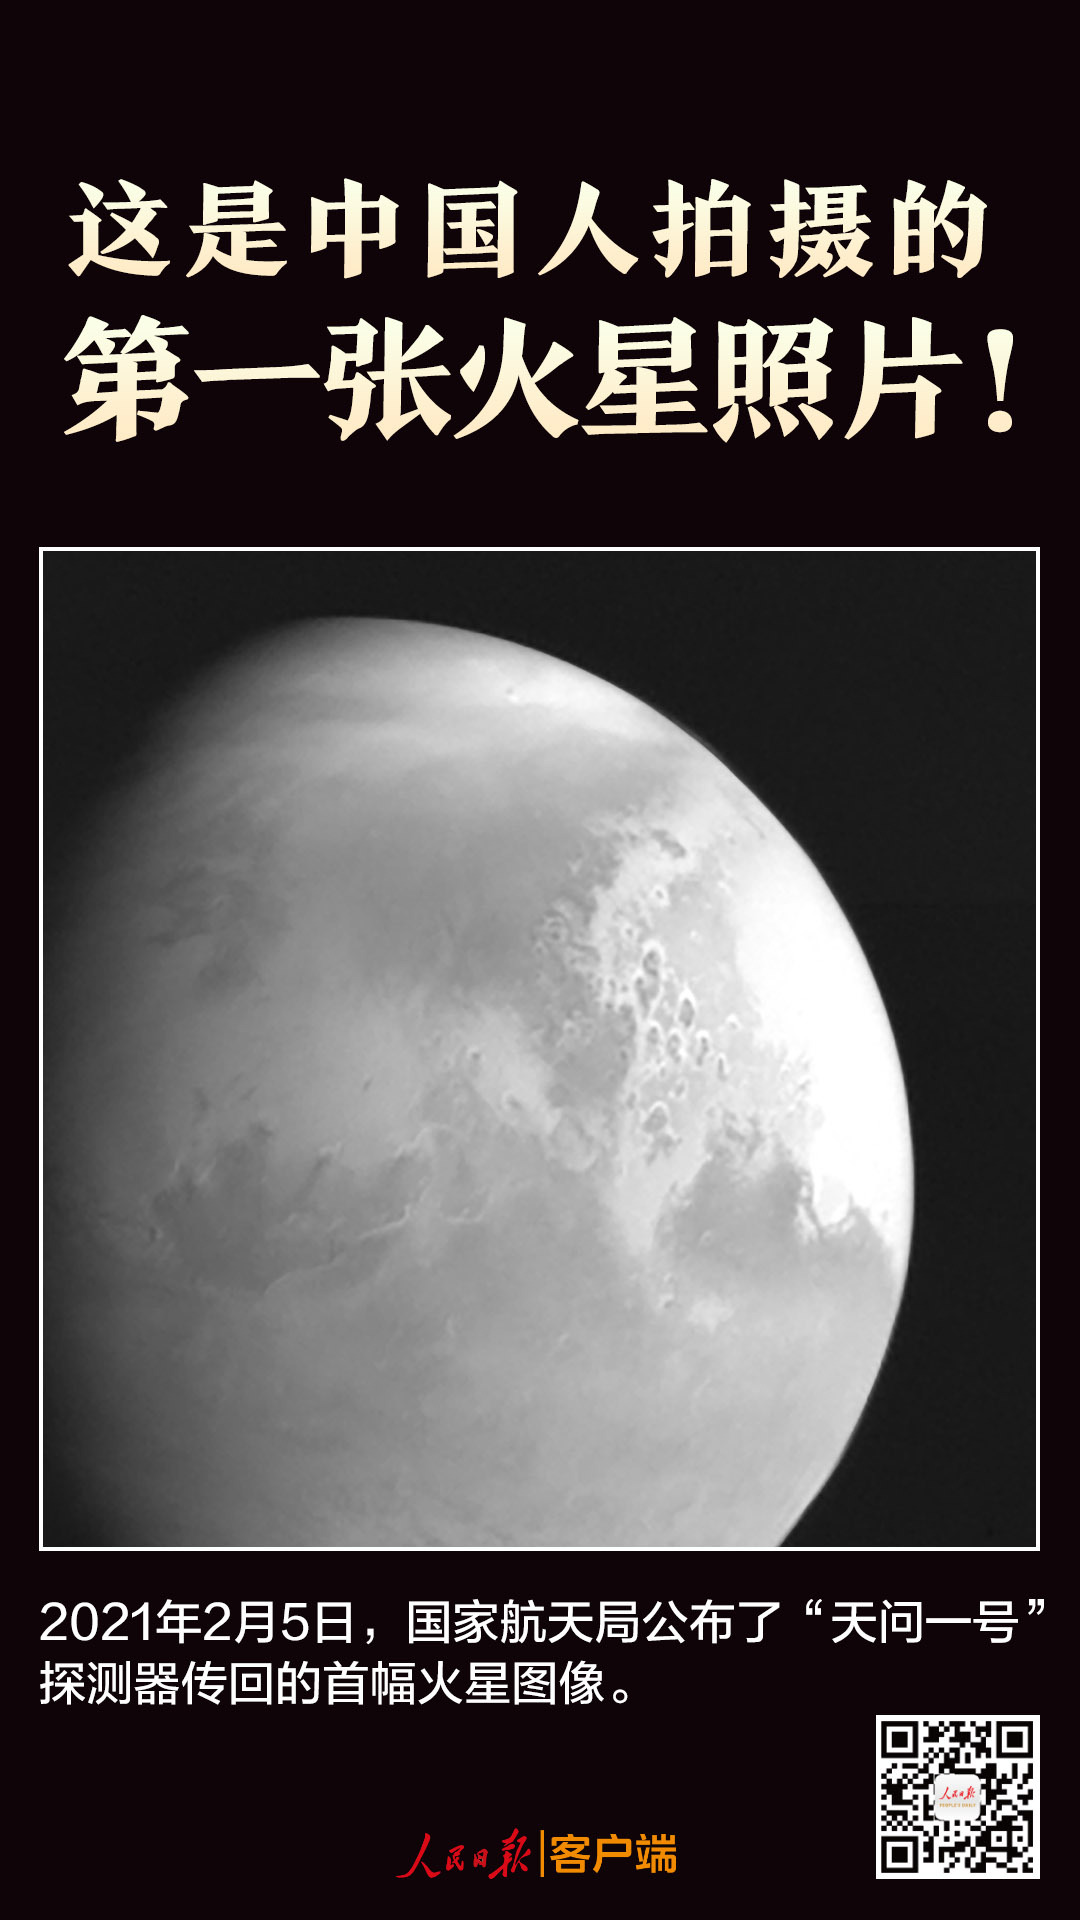 这是中国人拍摄的第一张火星照片！